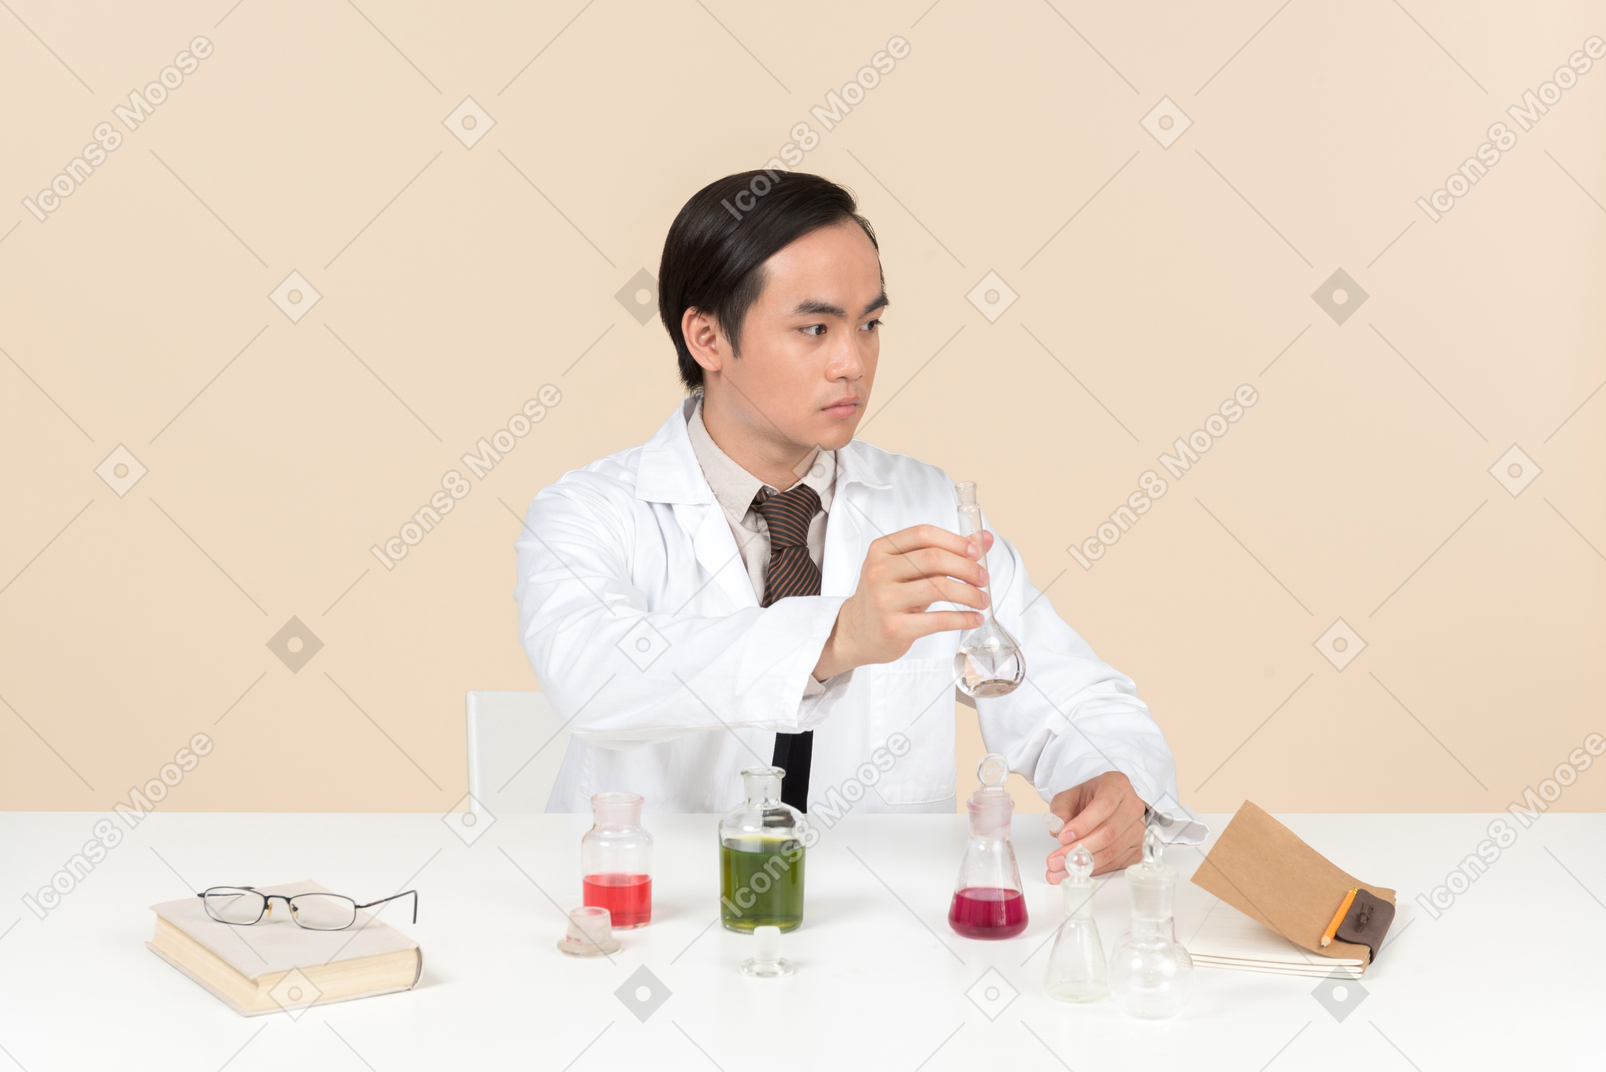 Un scientifique asiatique en blouse blanche travaillant sur une expérience chimique